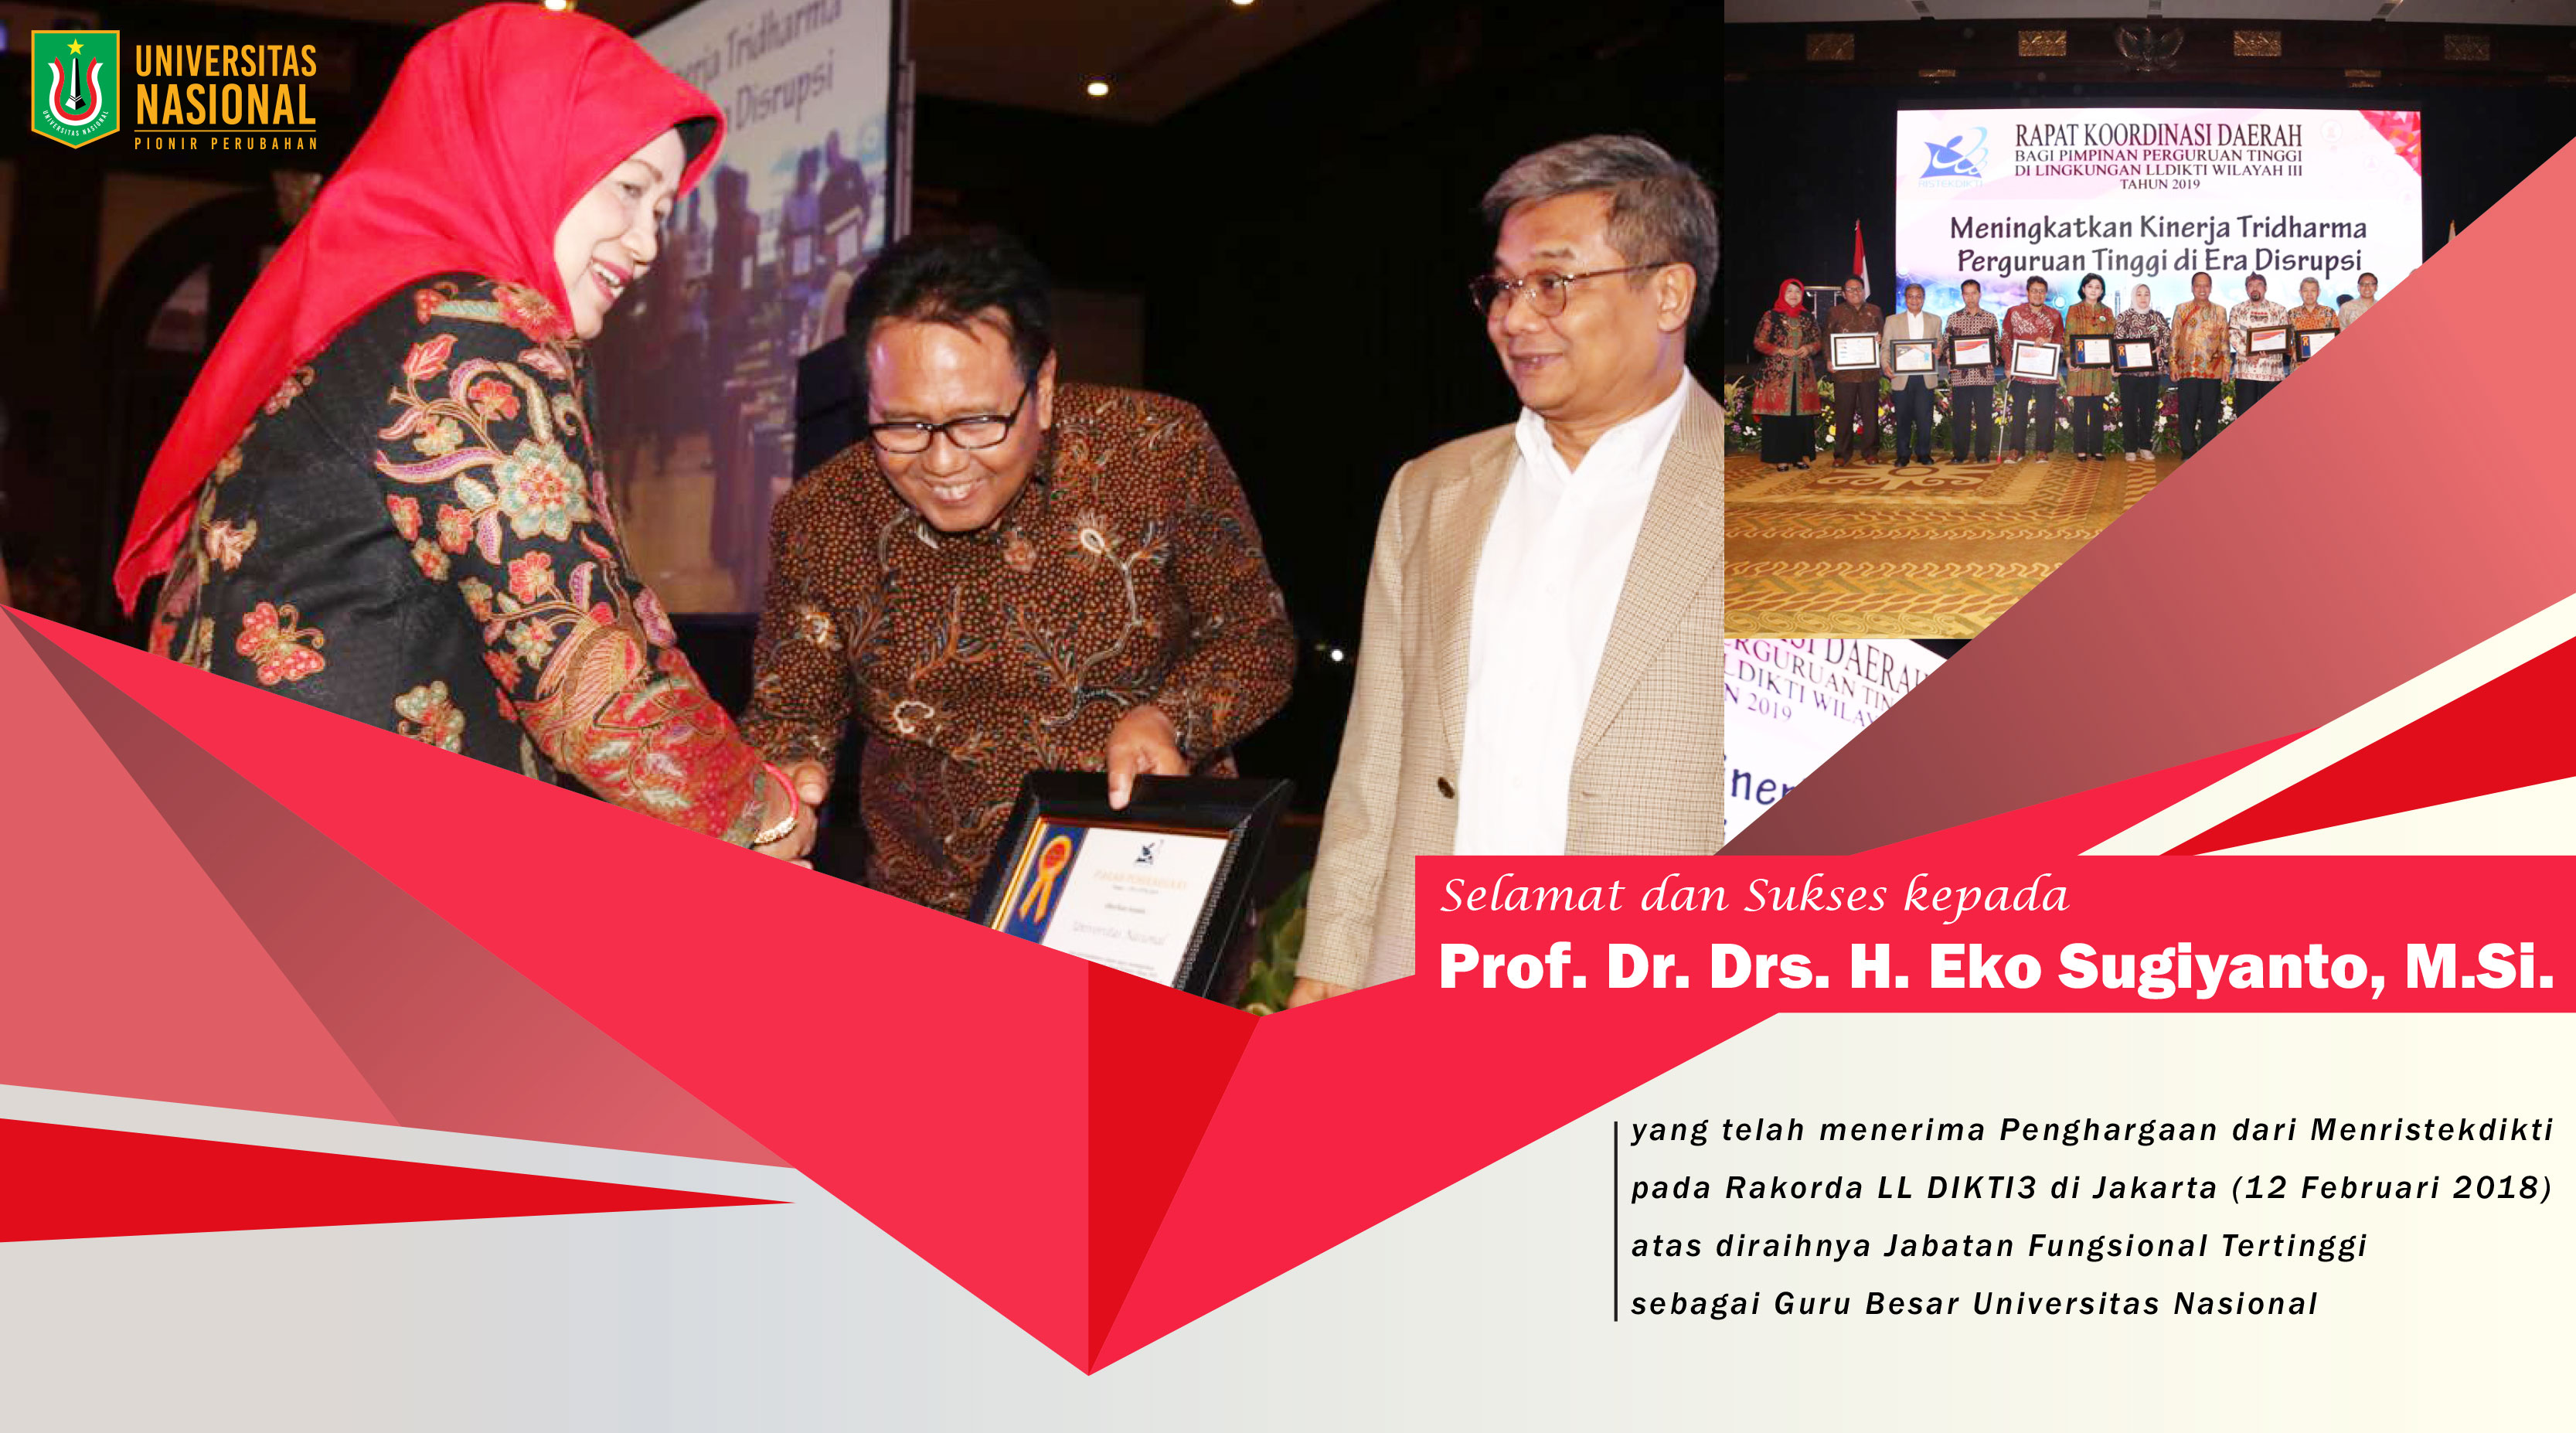 Prof. Dr. Drs. H. Eko Sugiyanto, M.Si. menerima Penghargaan dari Menristekdikti